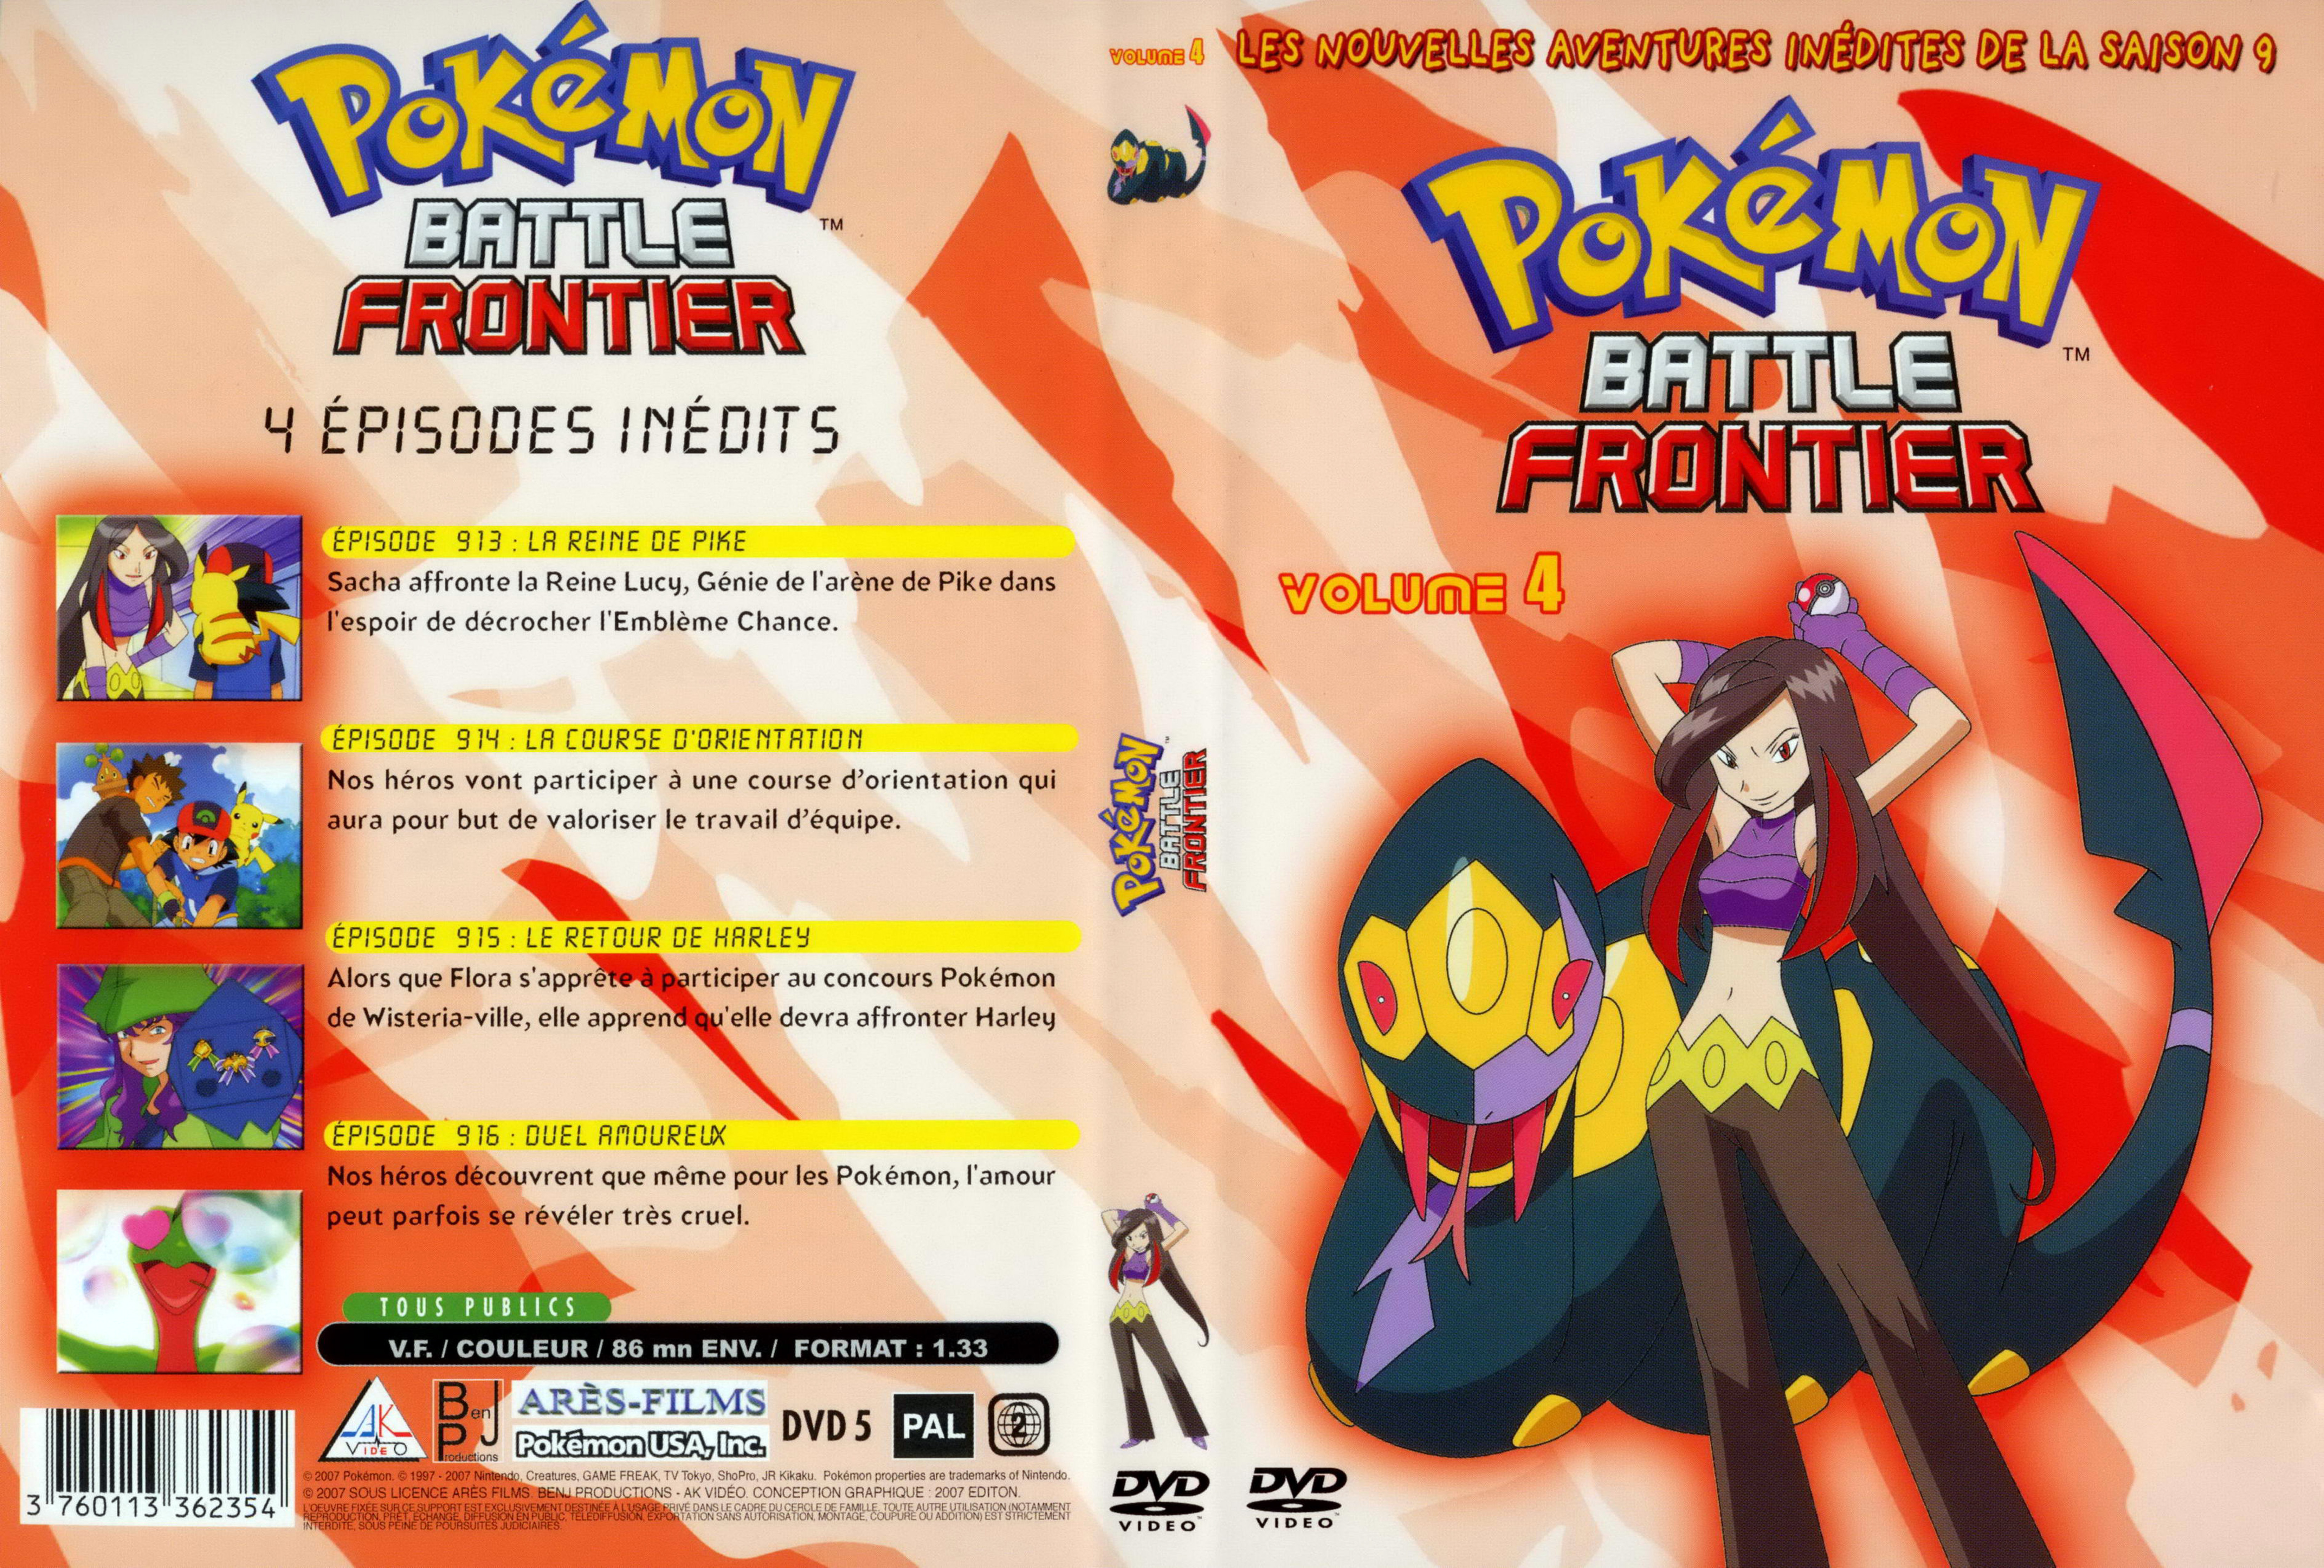 Jaquette DVD Pokemon battle frontier Saison 09 DVD 4